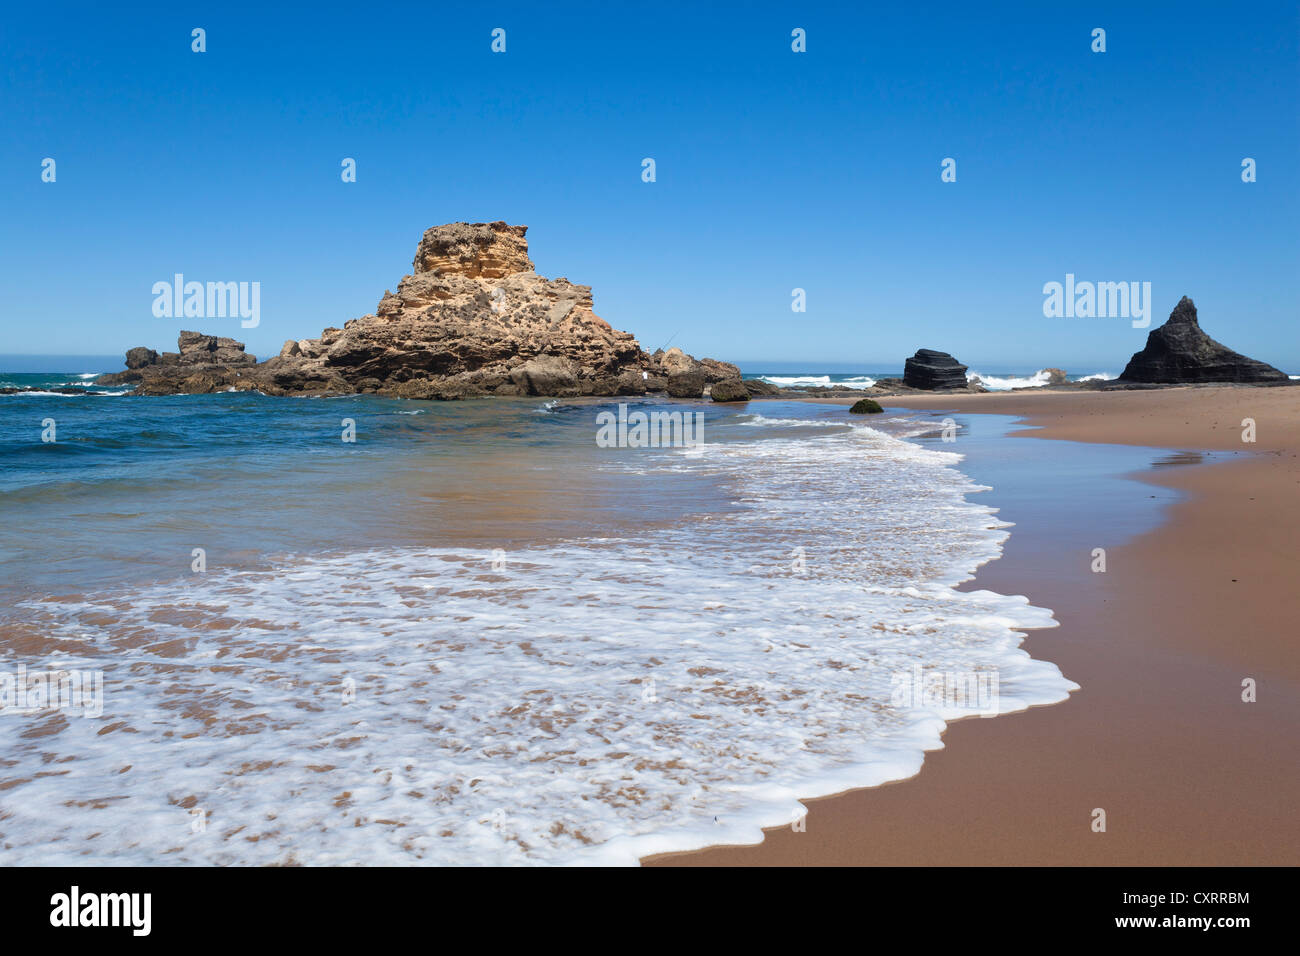 Praia da Castelejo Beach, côte Atlantique, Algarve, Portugal, Europe Banque D'Images